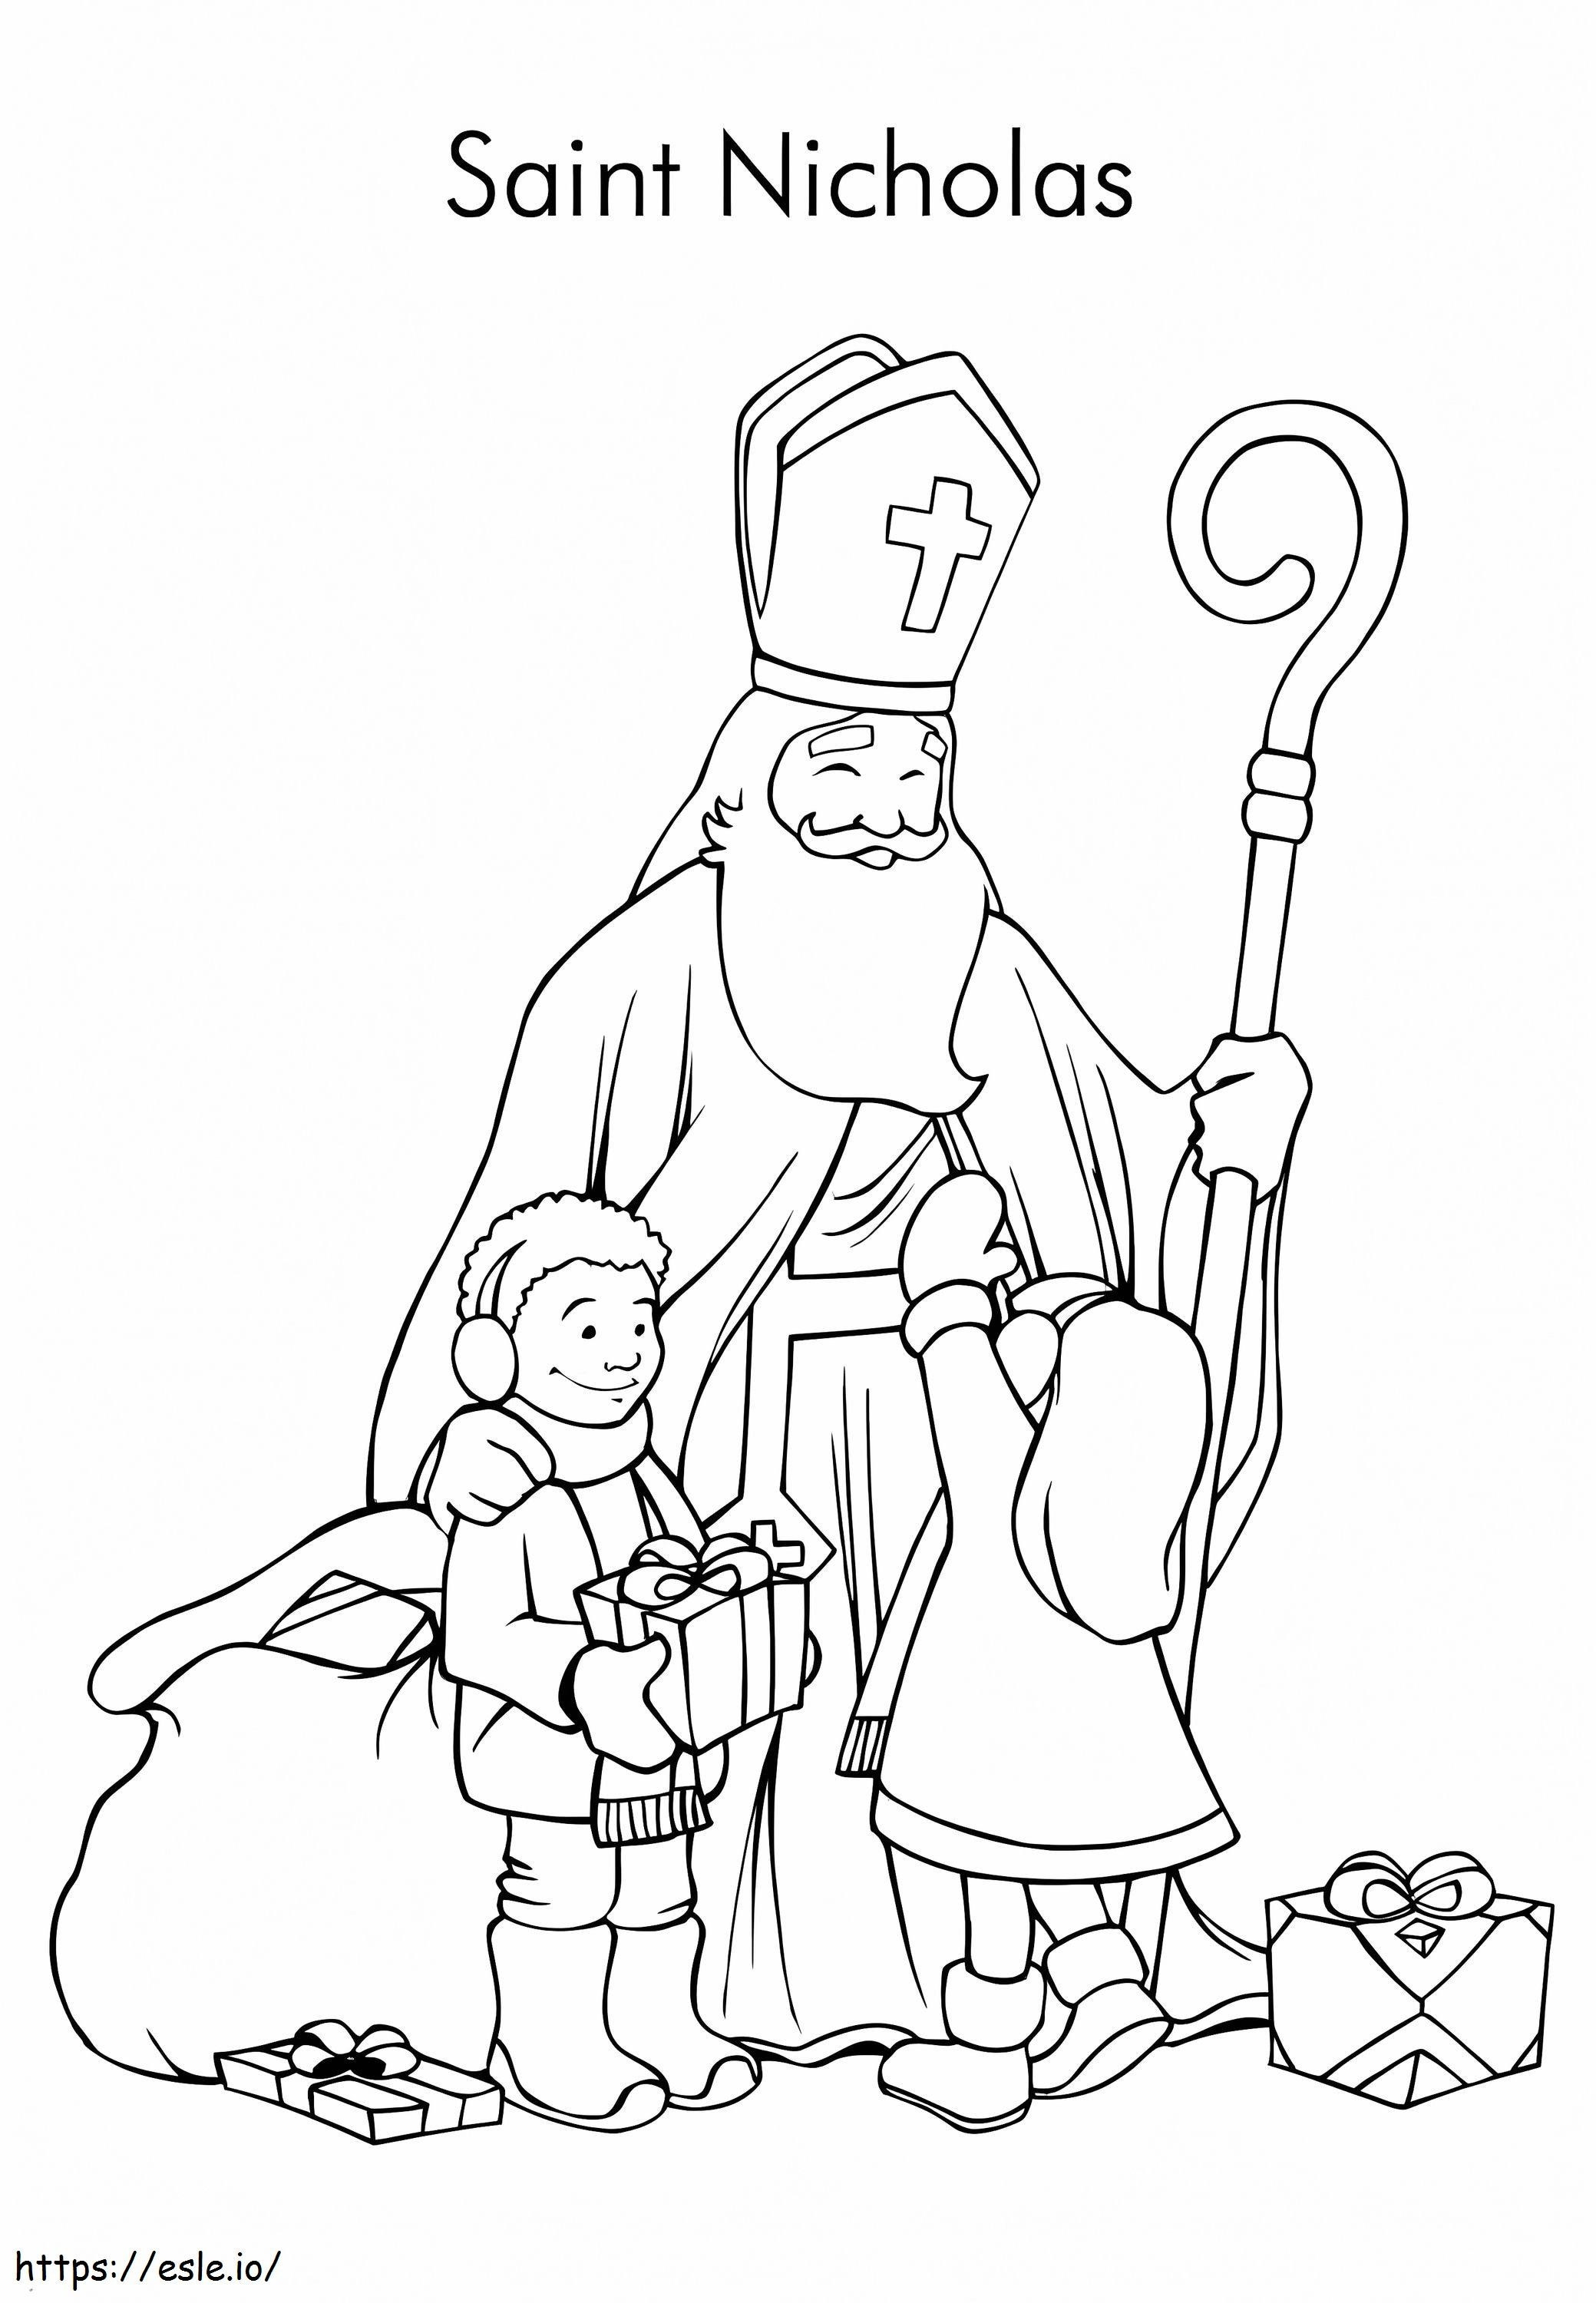 Kinder und Nikolaus ausmalbilder